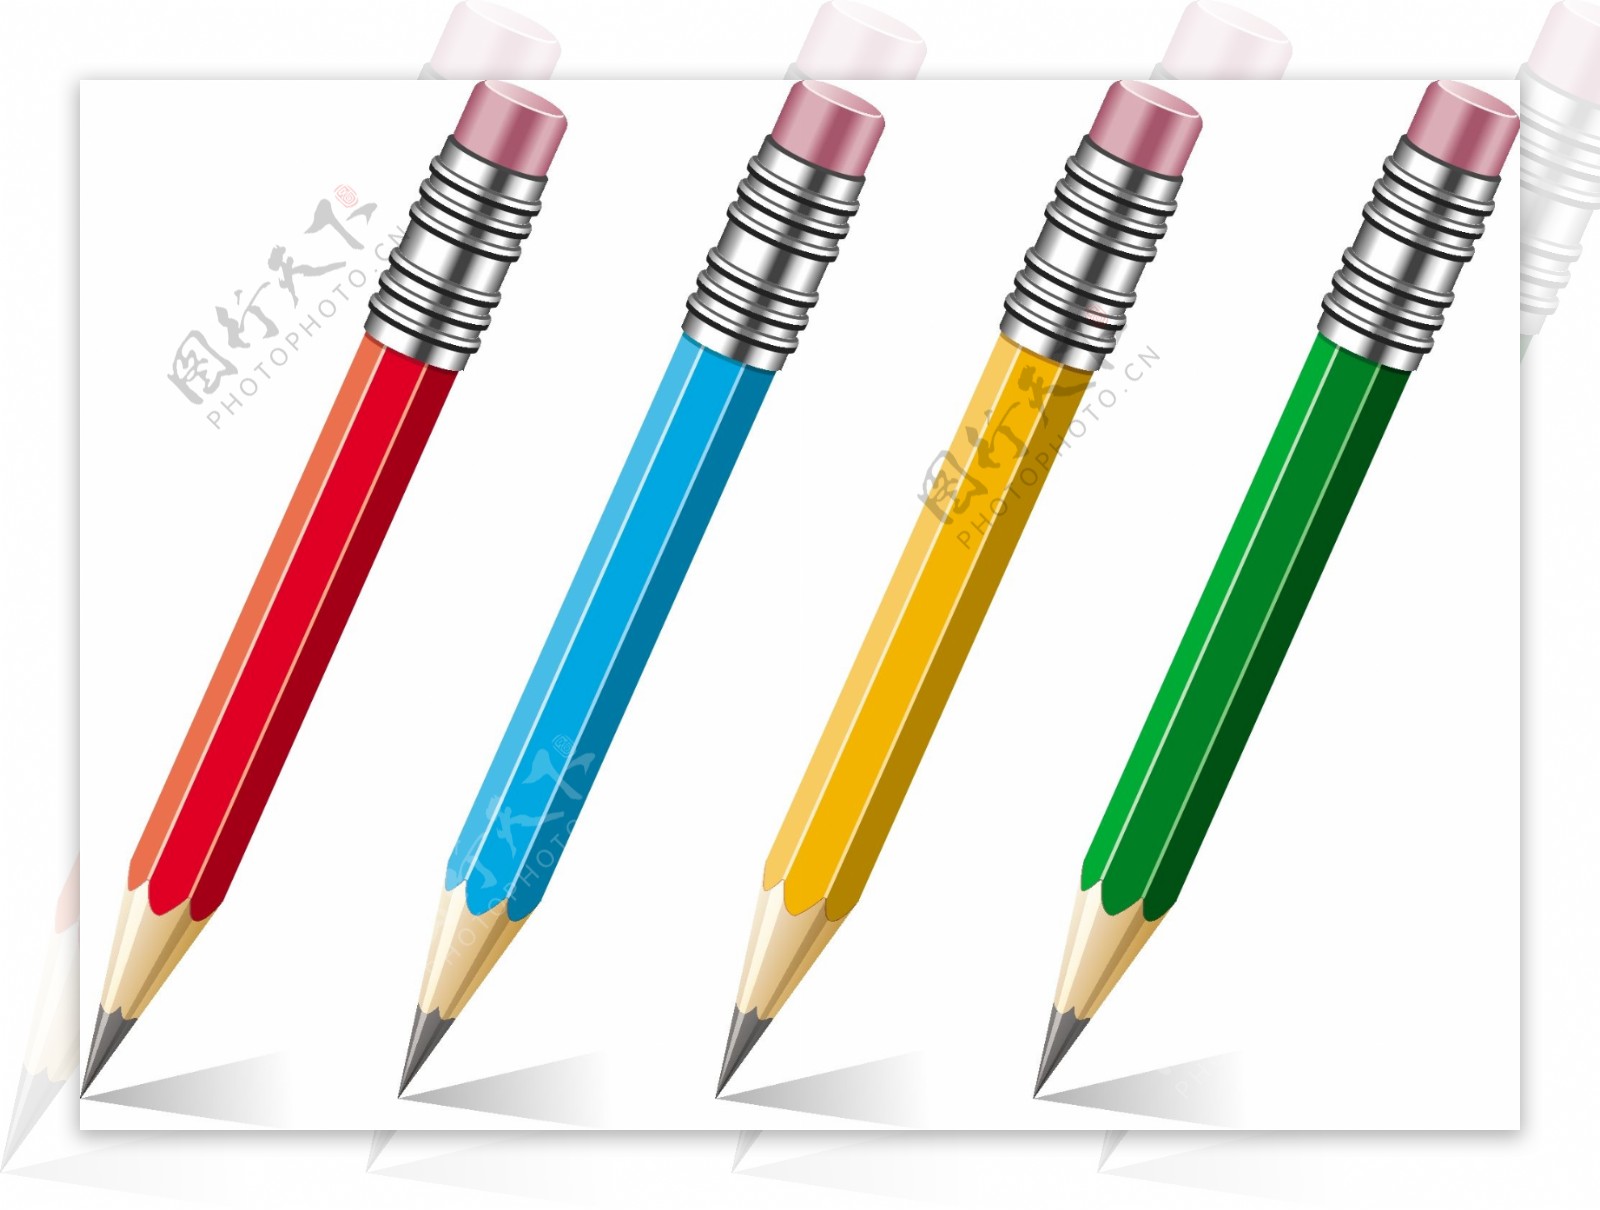 彩色矢量铅笔